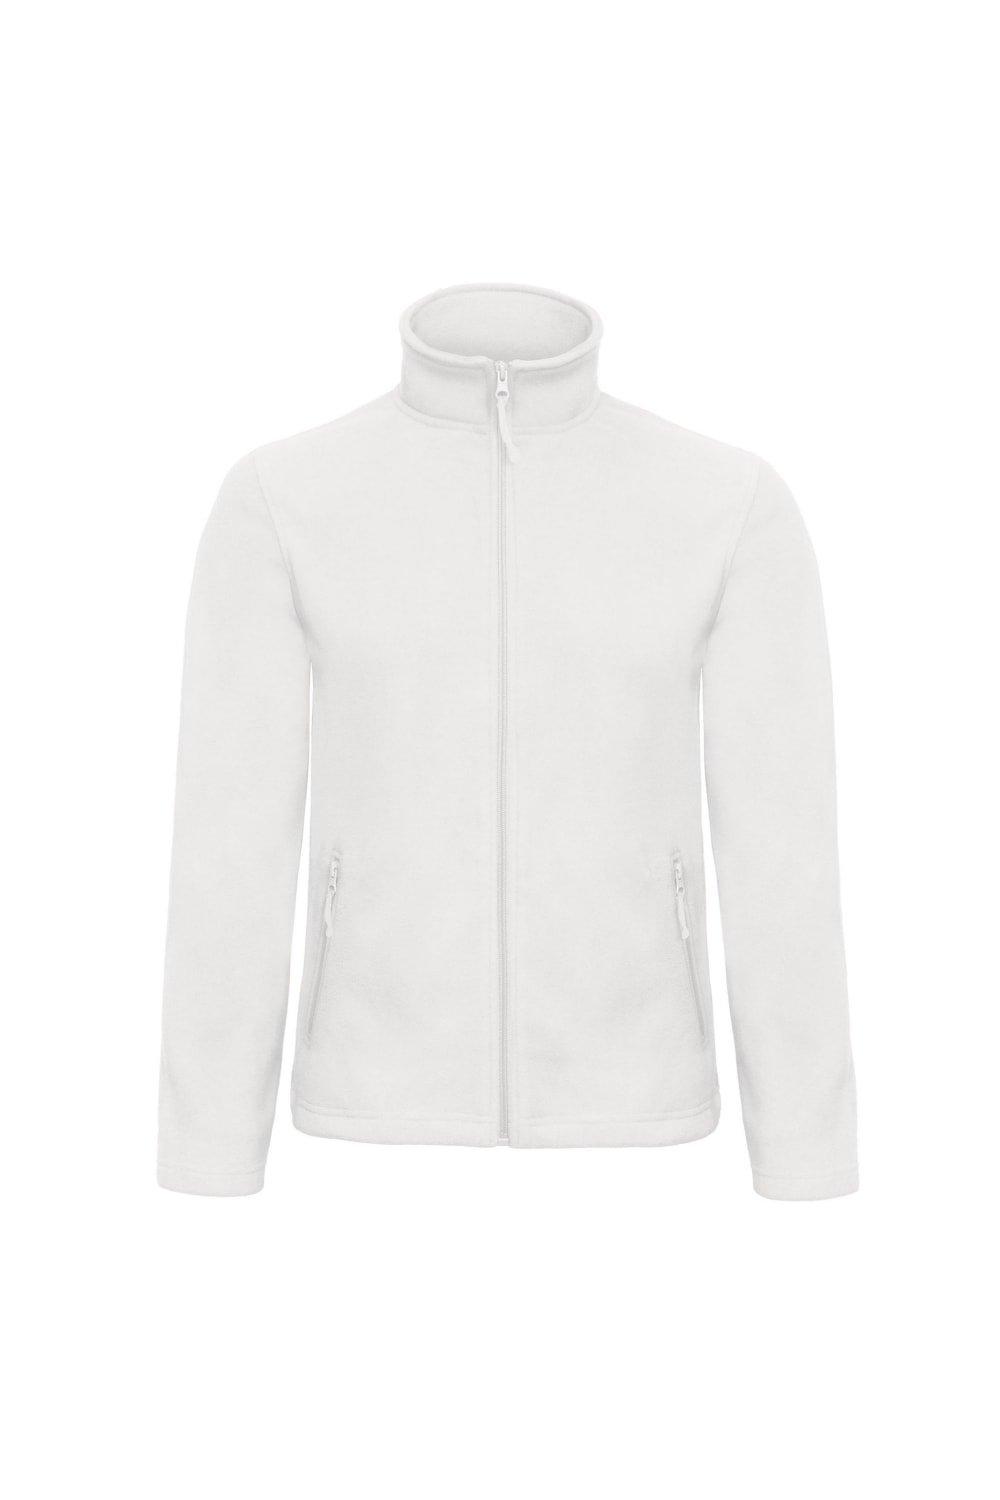 ID.501 Флисовая куртка B&C, белый